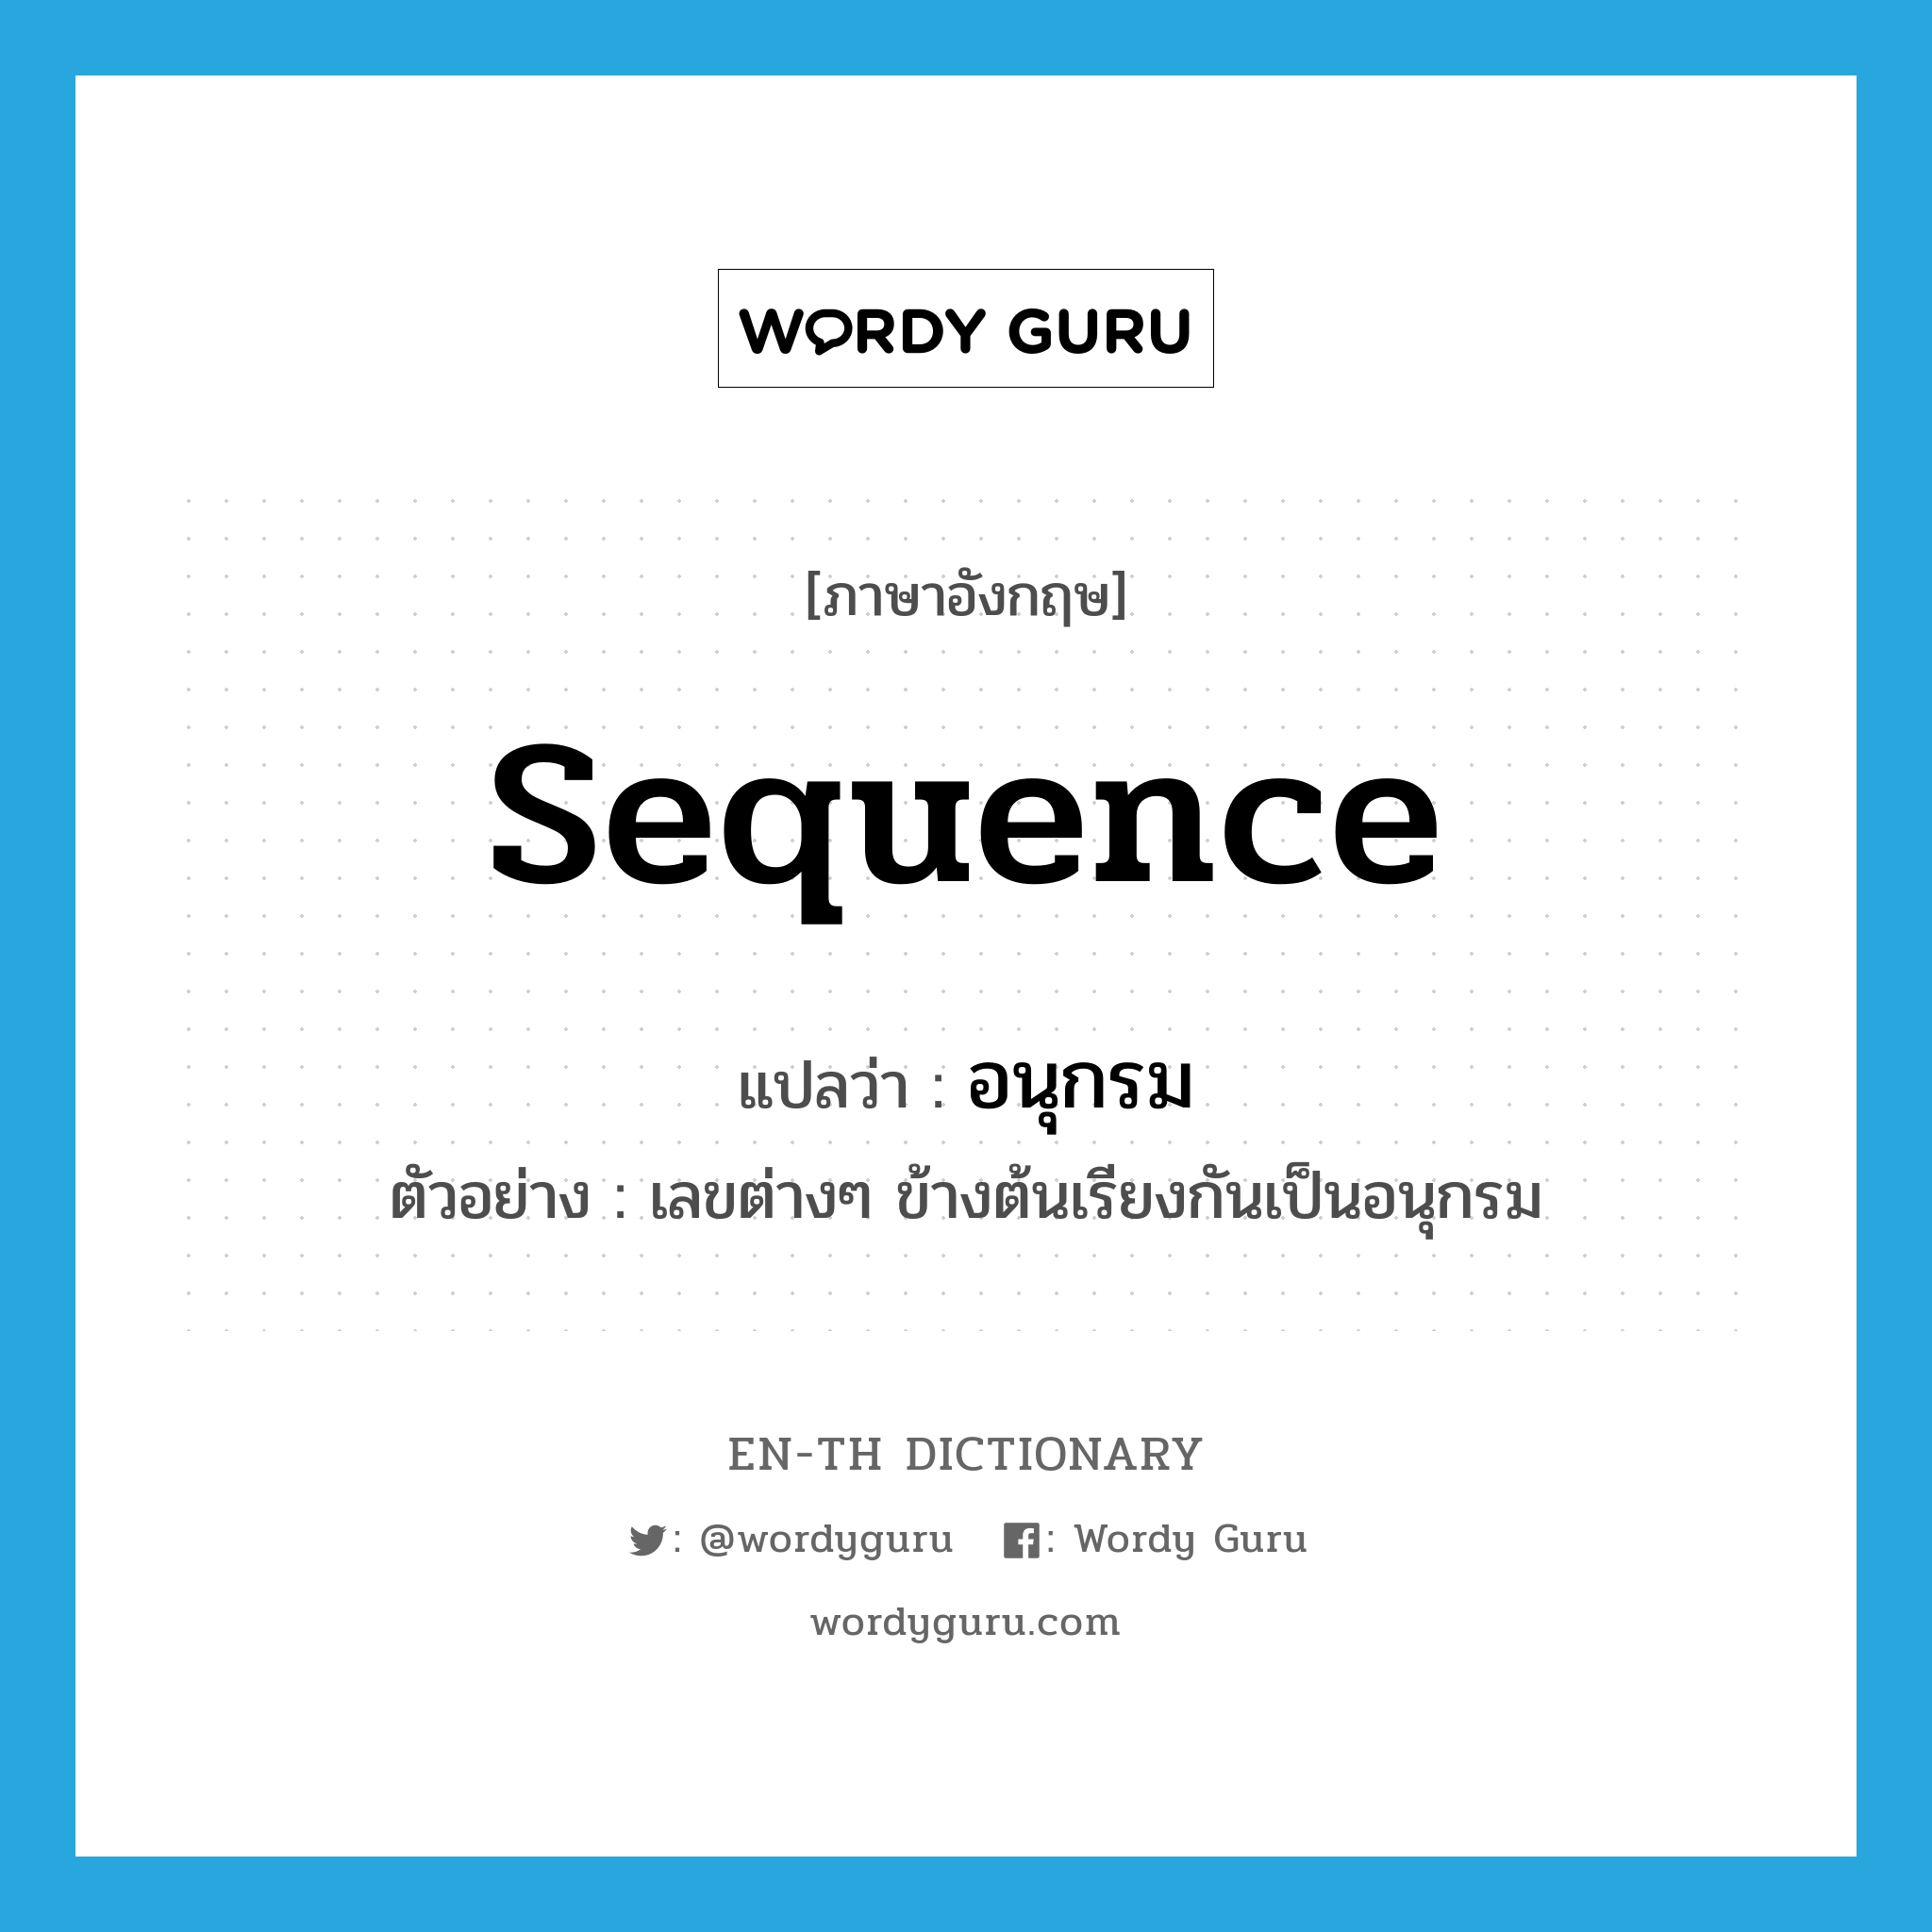 sequence แปลว่า?, คำศัพท์ภาษาอังกฤษ sequence แปลว่า อนุกรม ประเภท N ตัวอย่าง เลขต่างๆ ข้างต้นเรียงกันเป็นอนุกรม หมวด N